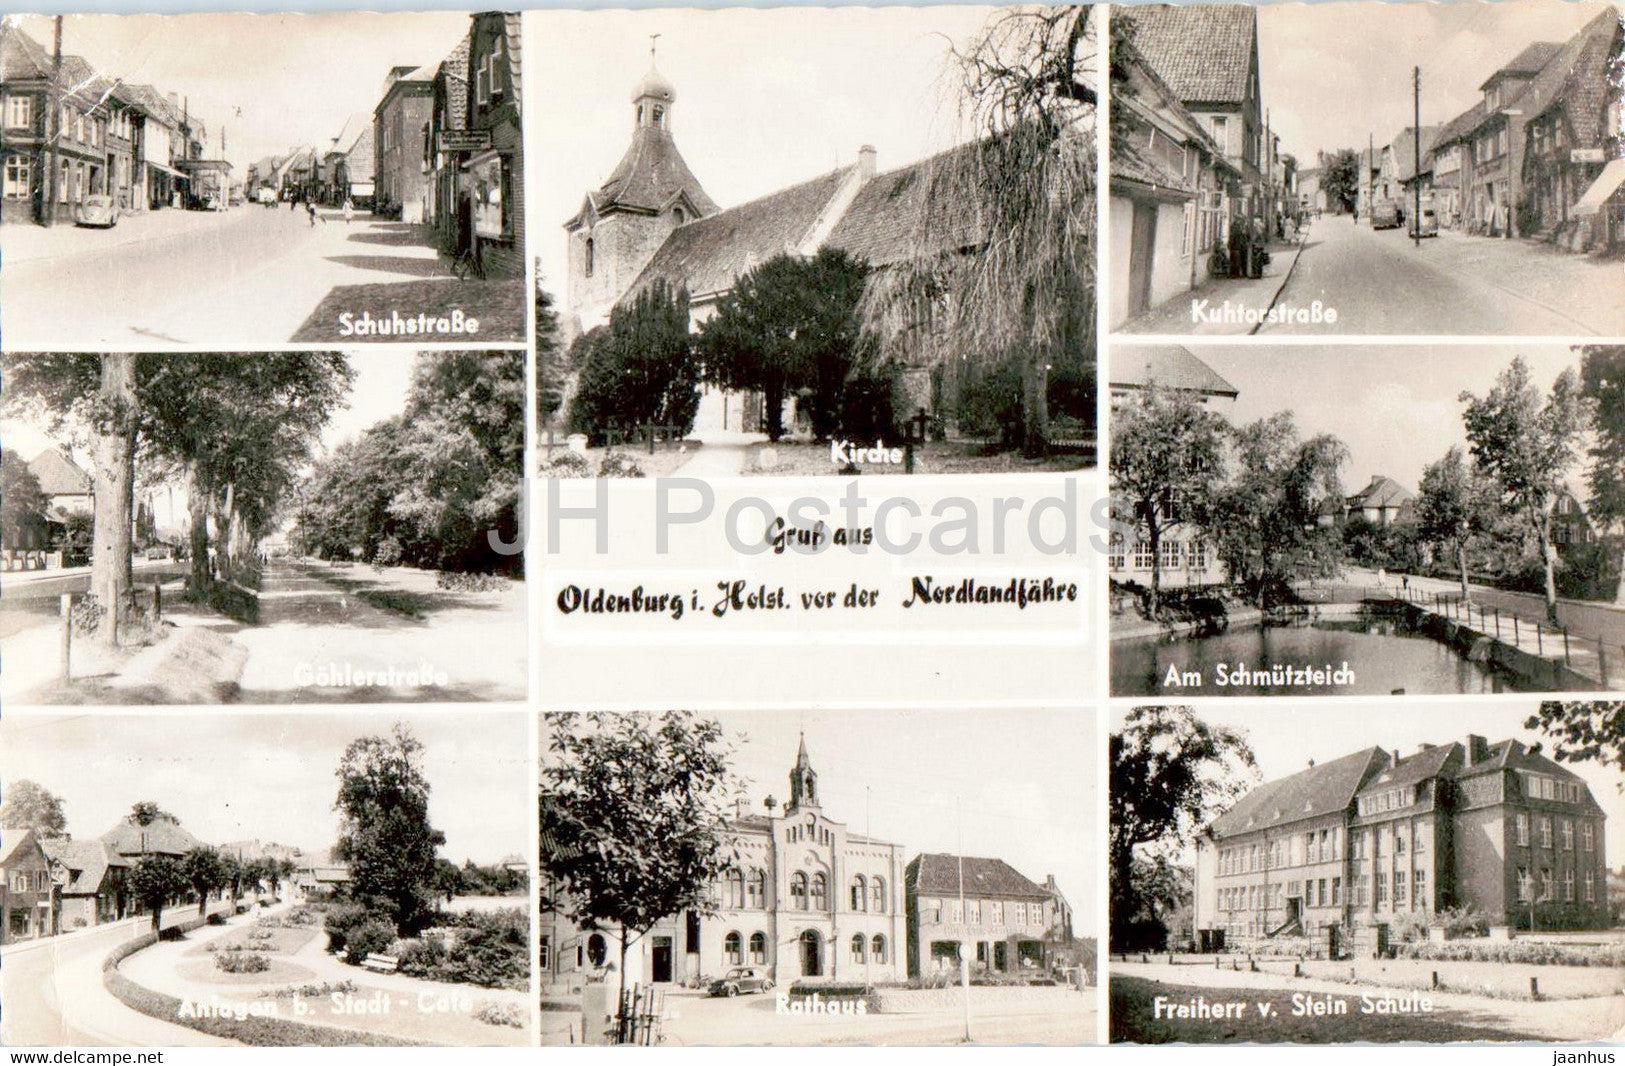 Gruss aus Oldenburg i Holst vor der Nordlandfahre - Schuhstrasse - Kirche - Rathaus - old postcard - Germany - unused - JH Postcards